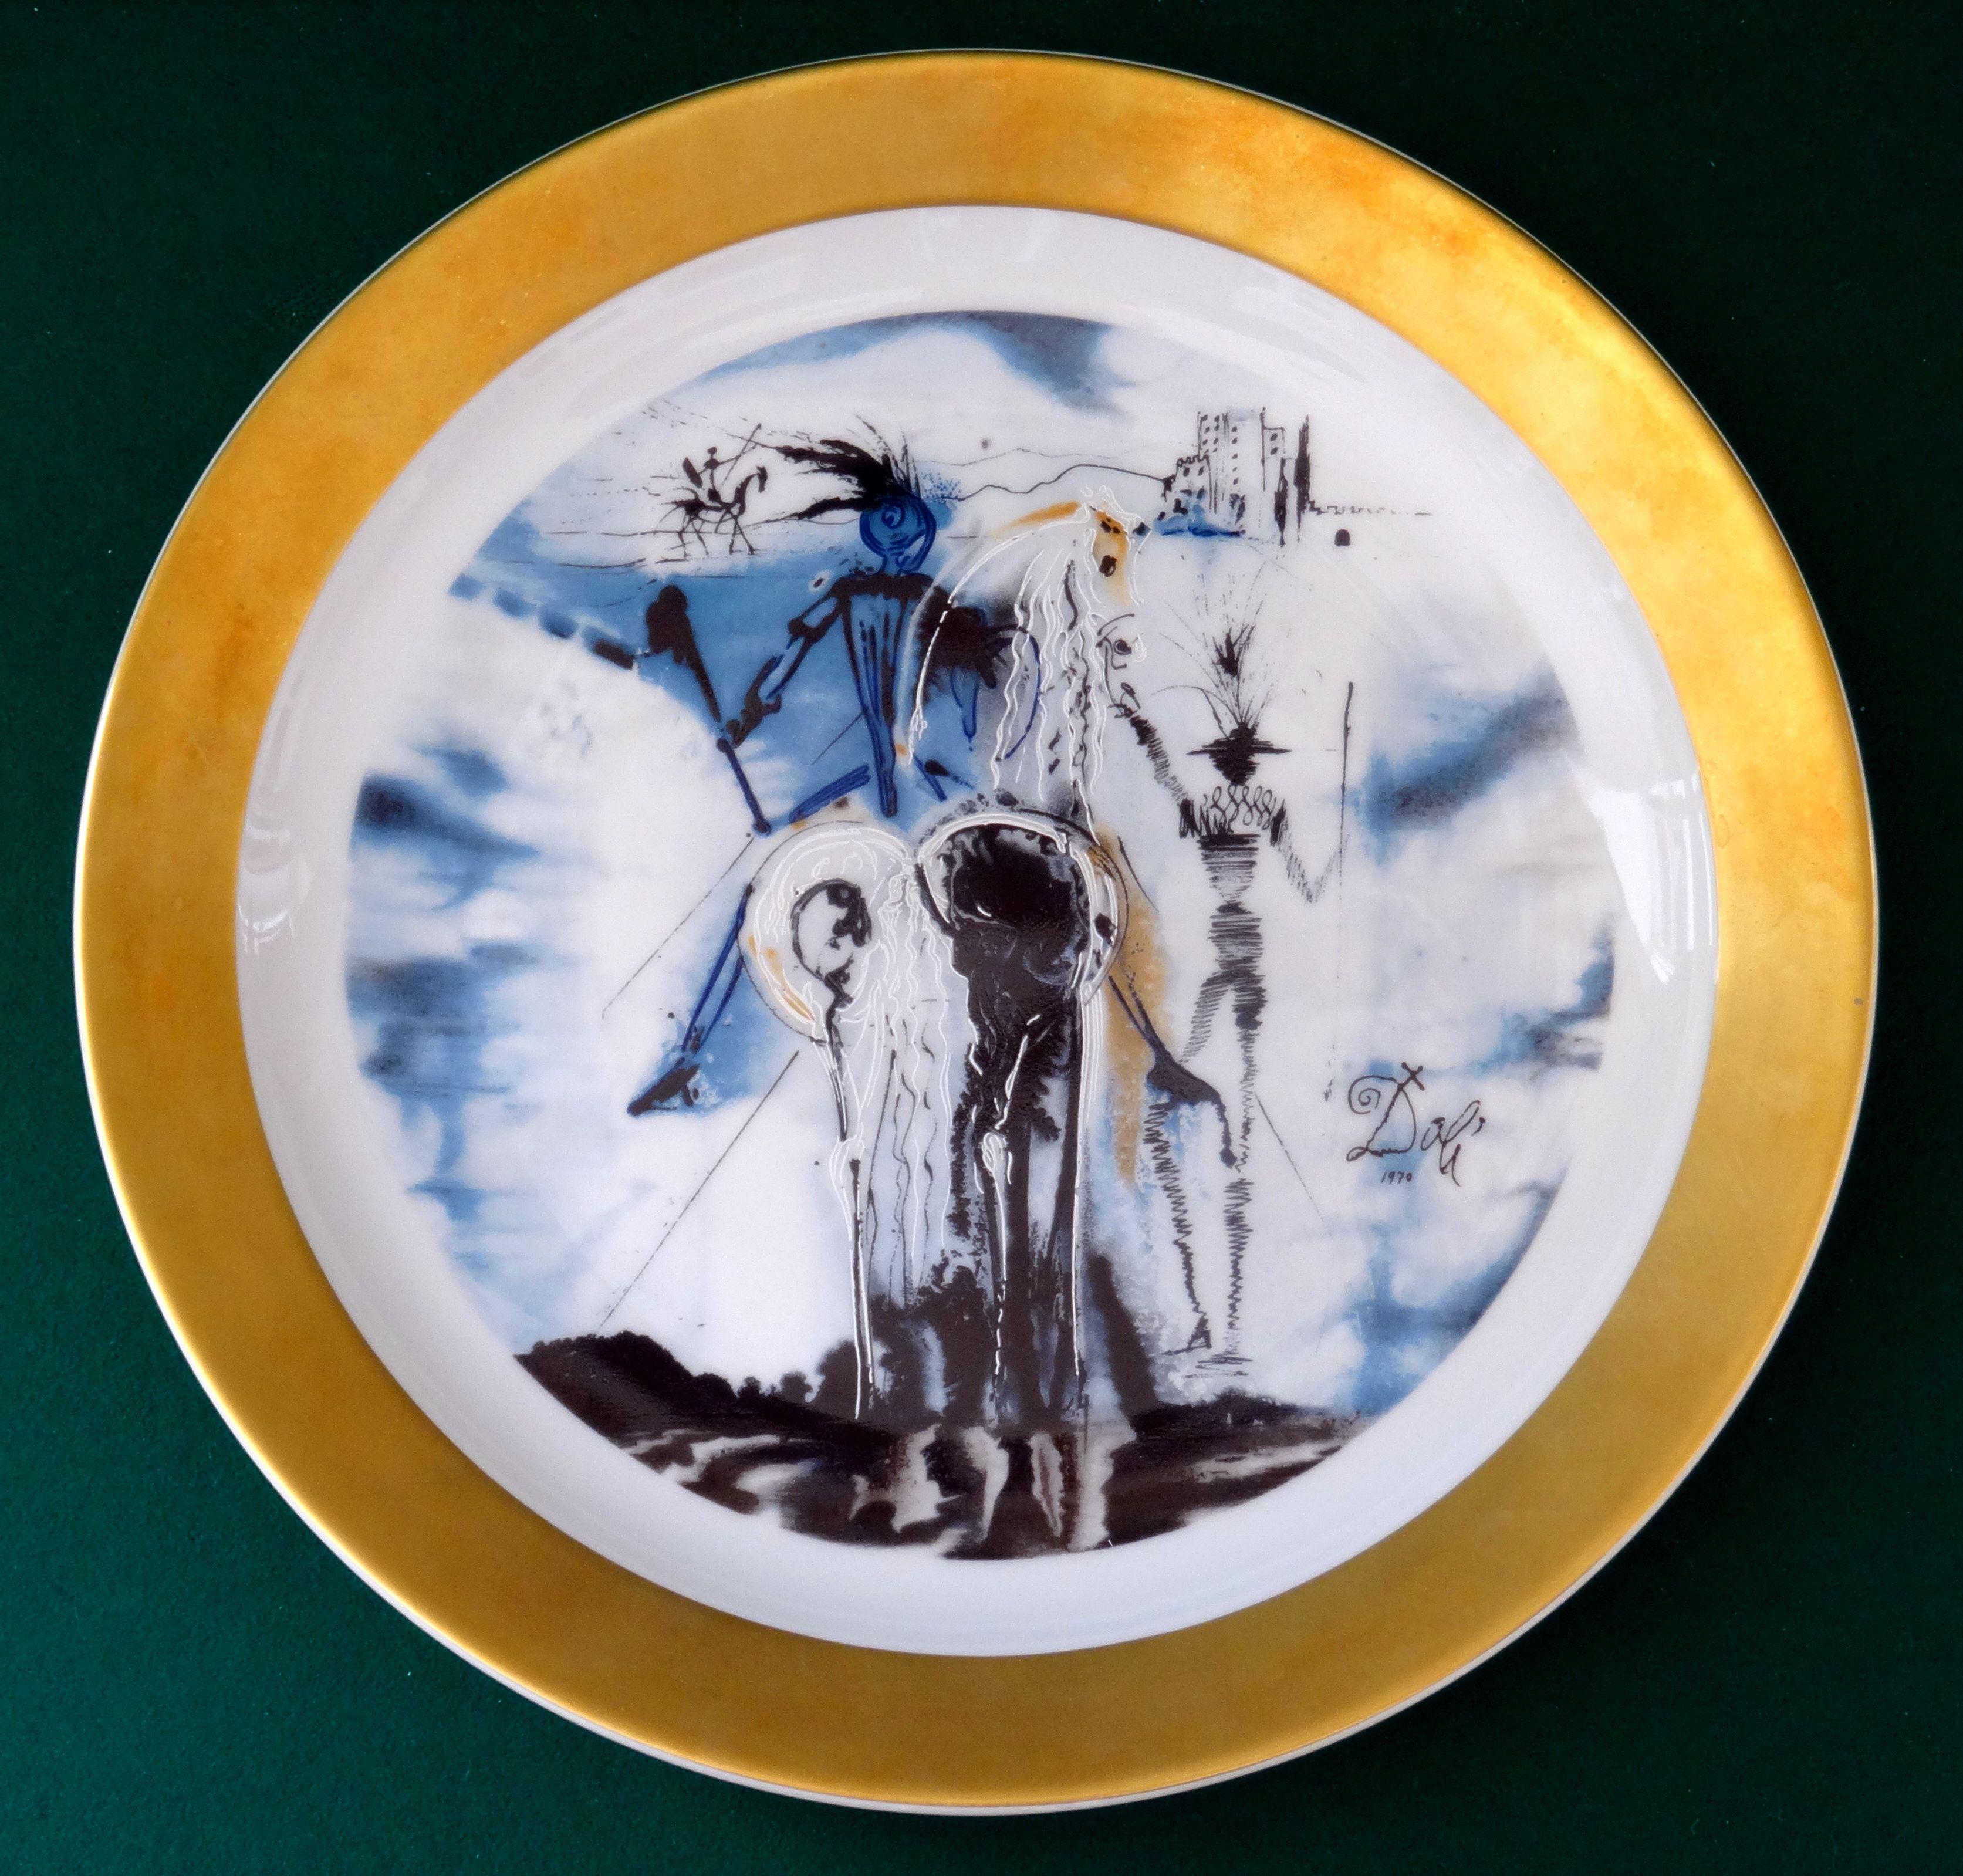 "Don Quichotte" Porcelain dish No. 3881, 1970, diam. 28 cm - Art by Salvador Dalí